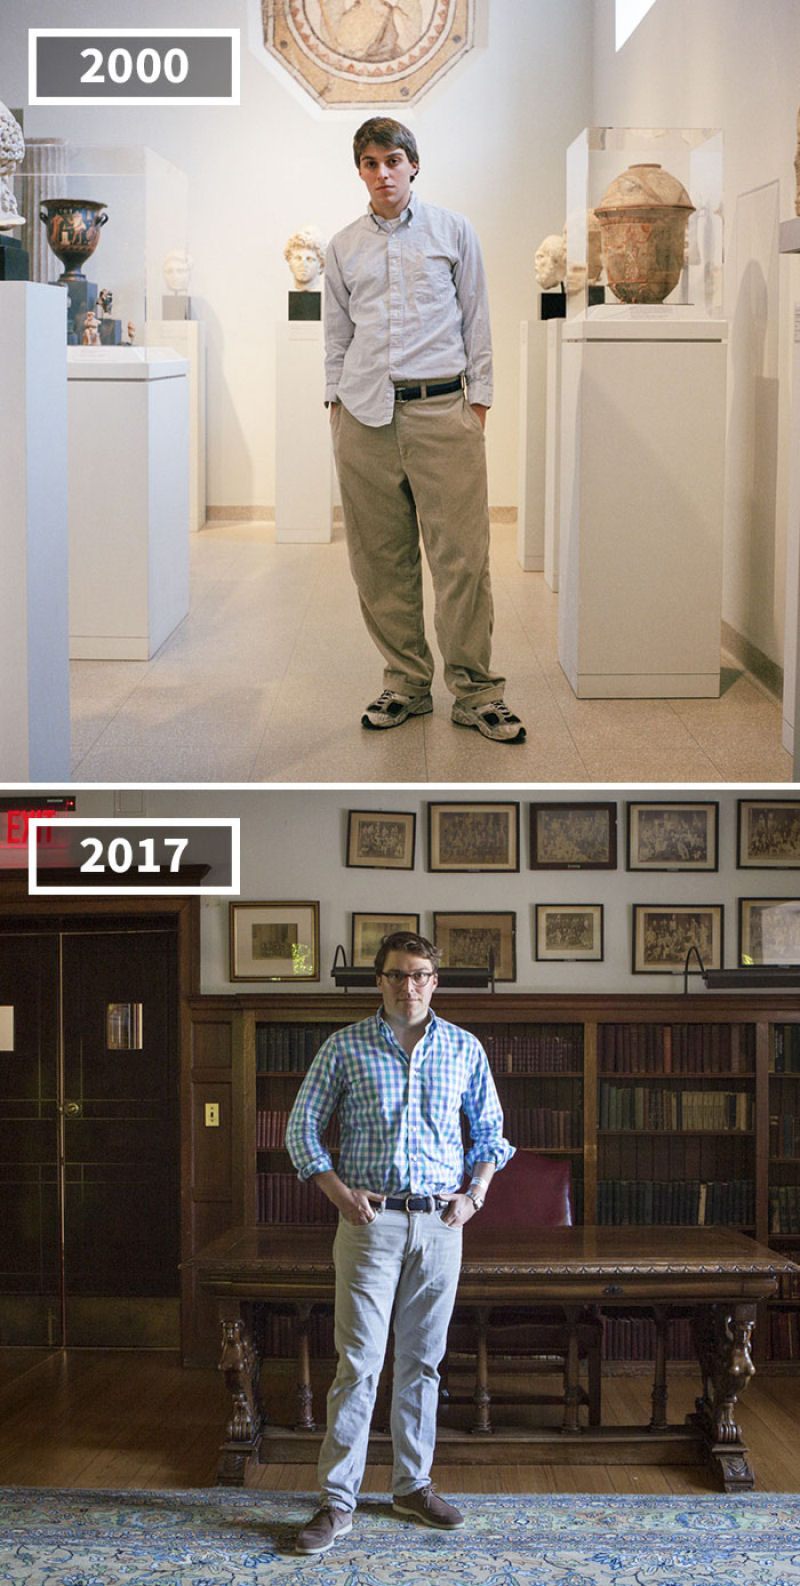 17 anos separam as fotos de antes e depois dos amigos desta fotgrafa 07